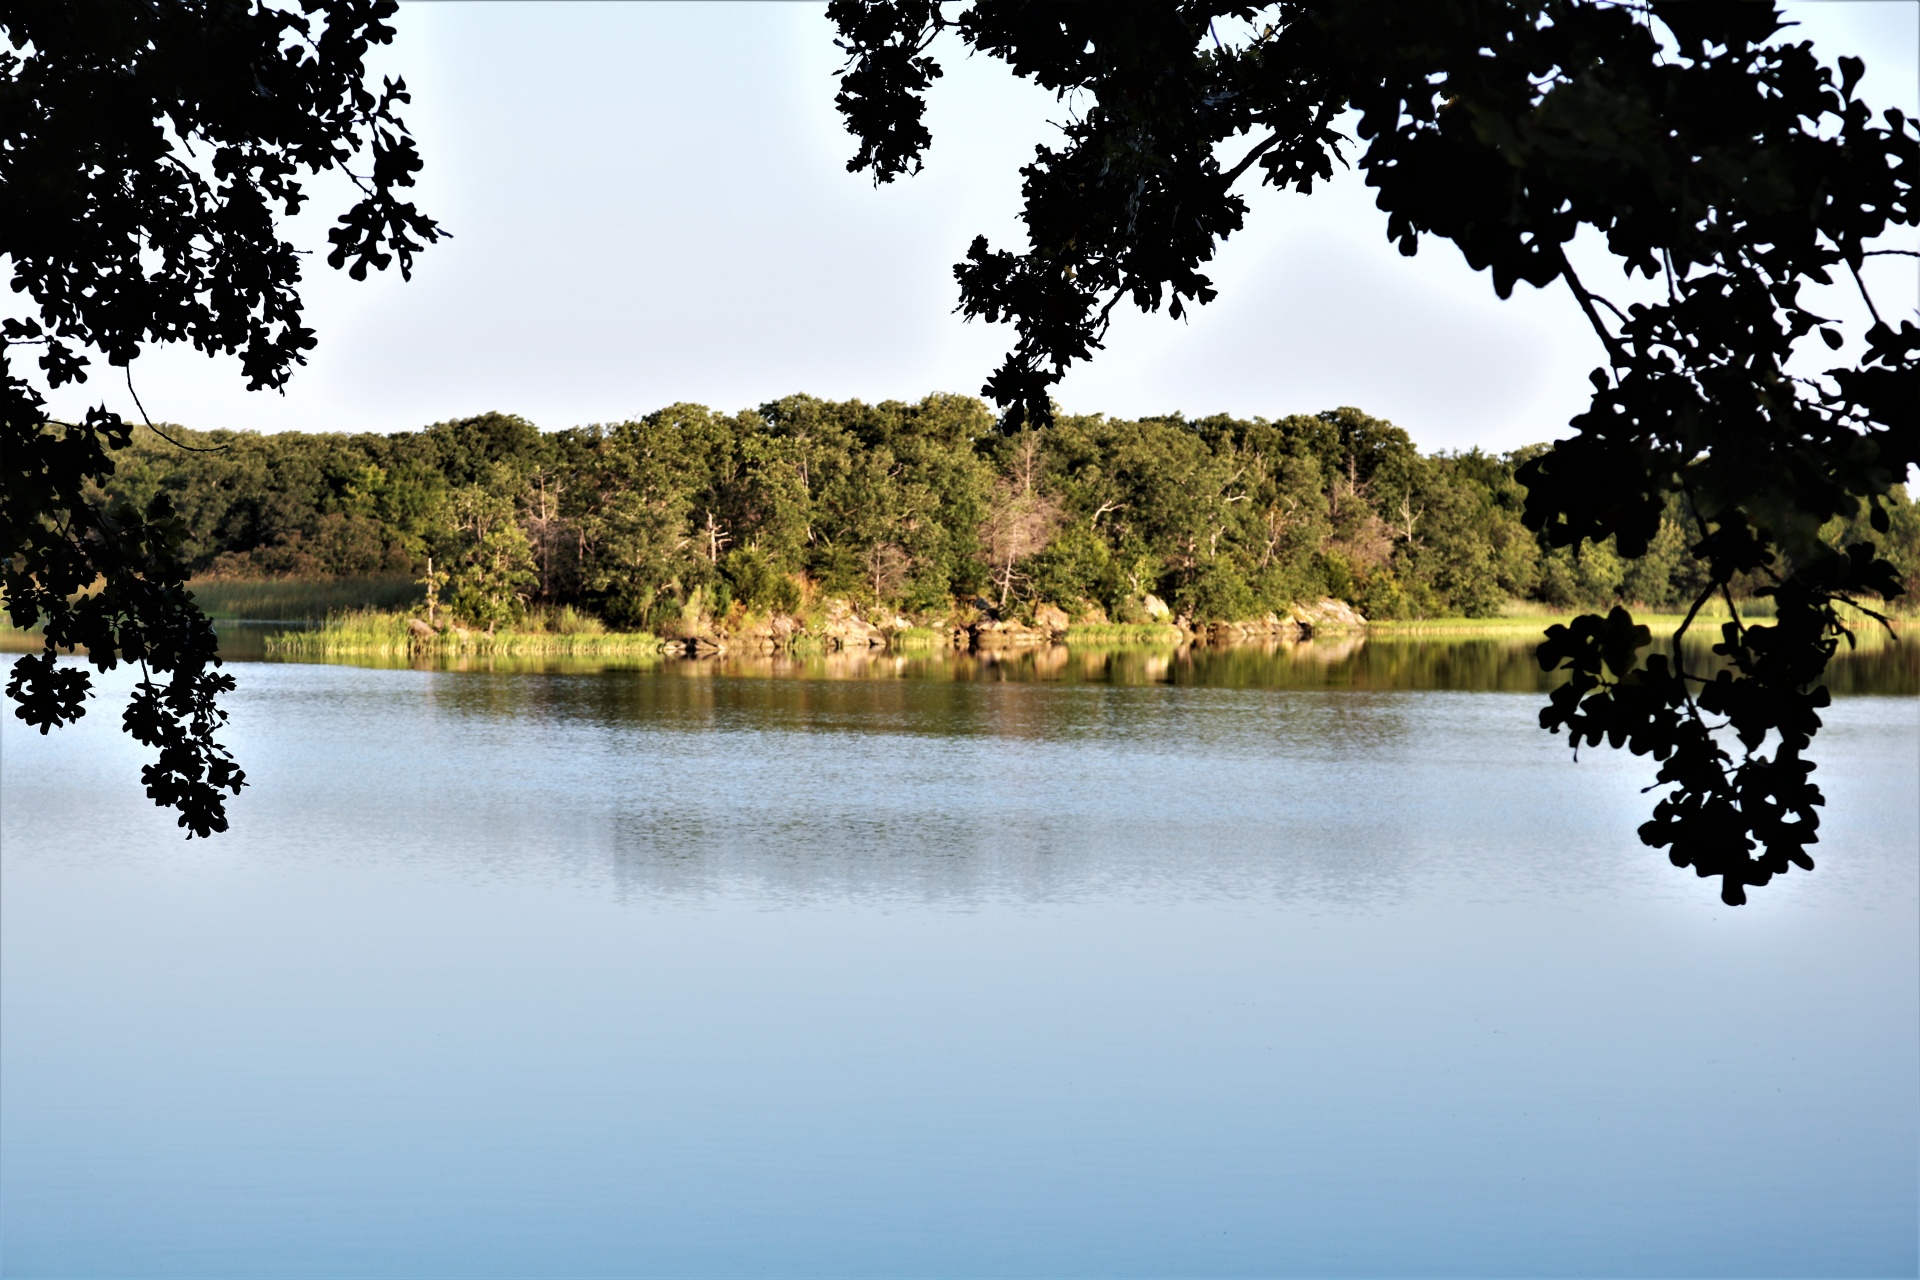 Vista al lago enmarcada por árboles